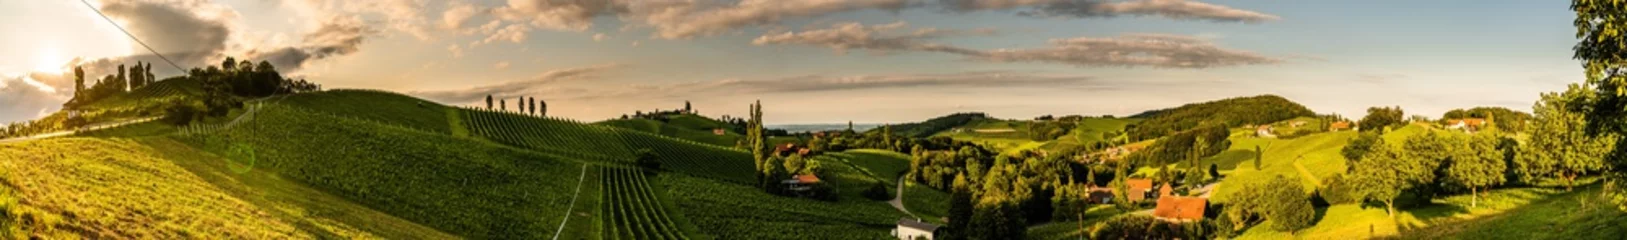  Panoramamening van wijngaarden in de zomer in Zuid-Stiermarken, de toeristenvlek van Oostenrijk, reisbestemming. © Przemyslaw Iciak